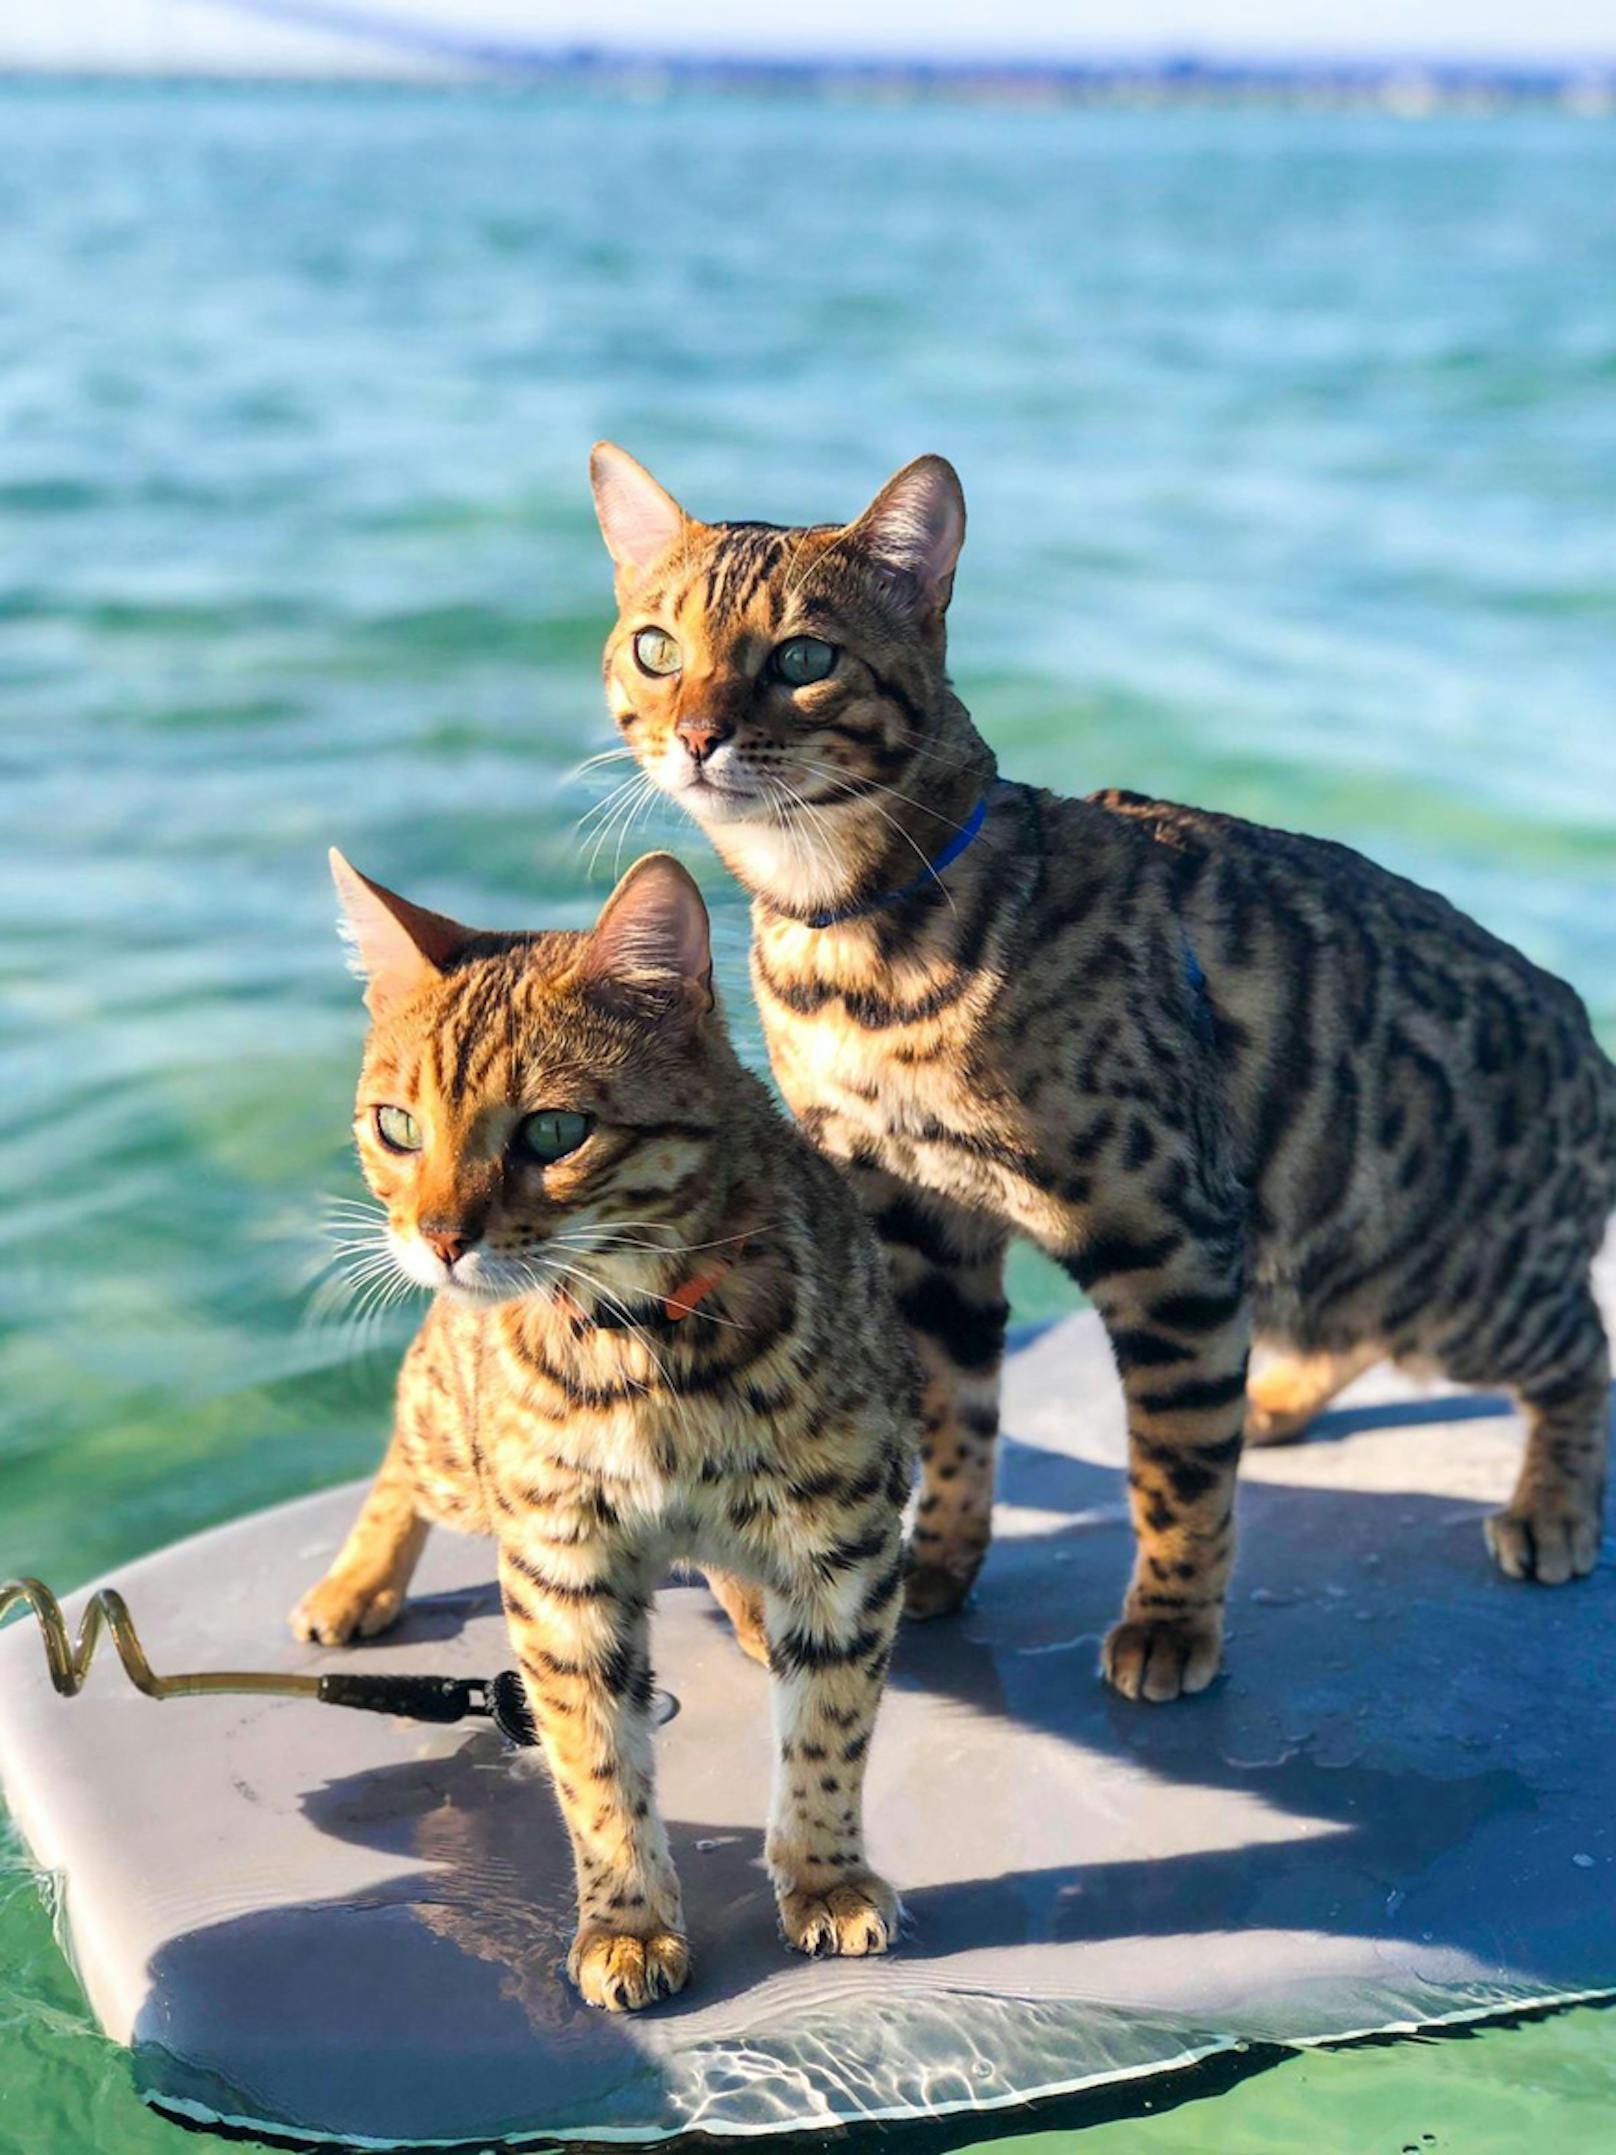 Maui und Star beweisen nämlich, dass nicht alle Katzen wasserscheu sind. Die beiden Tiger lieben es zu surfen.